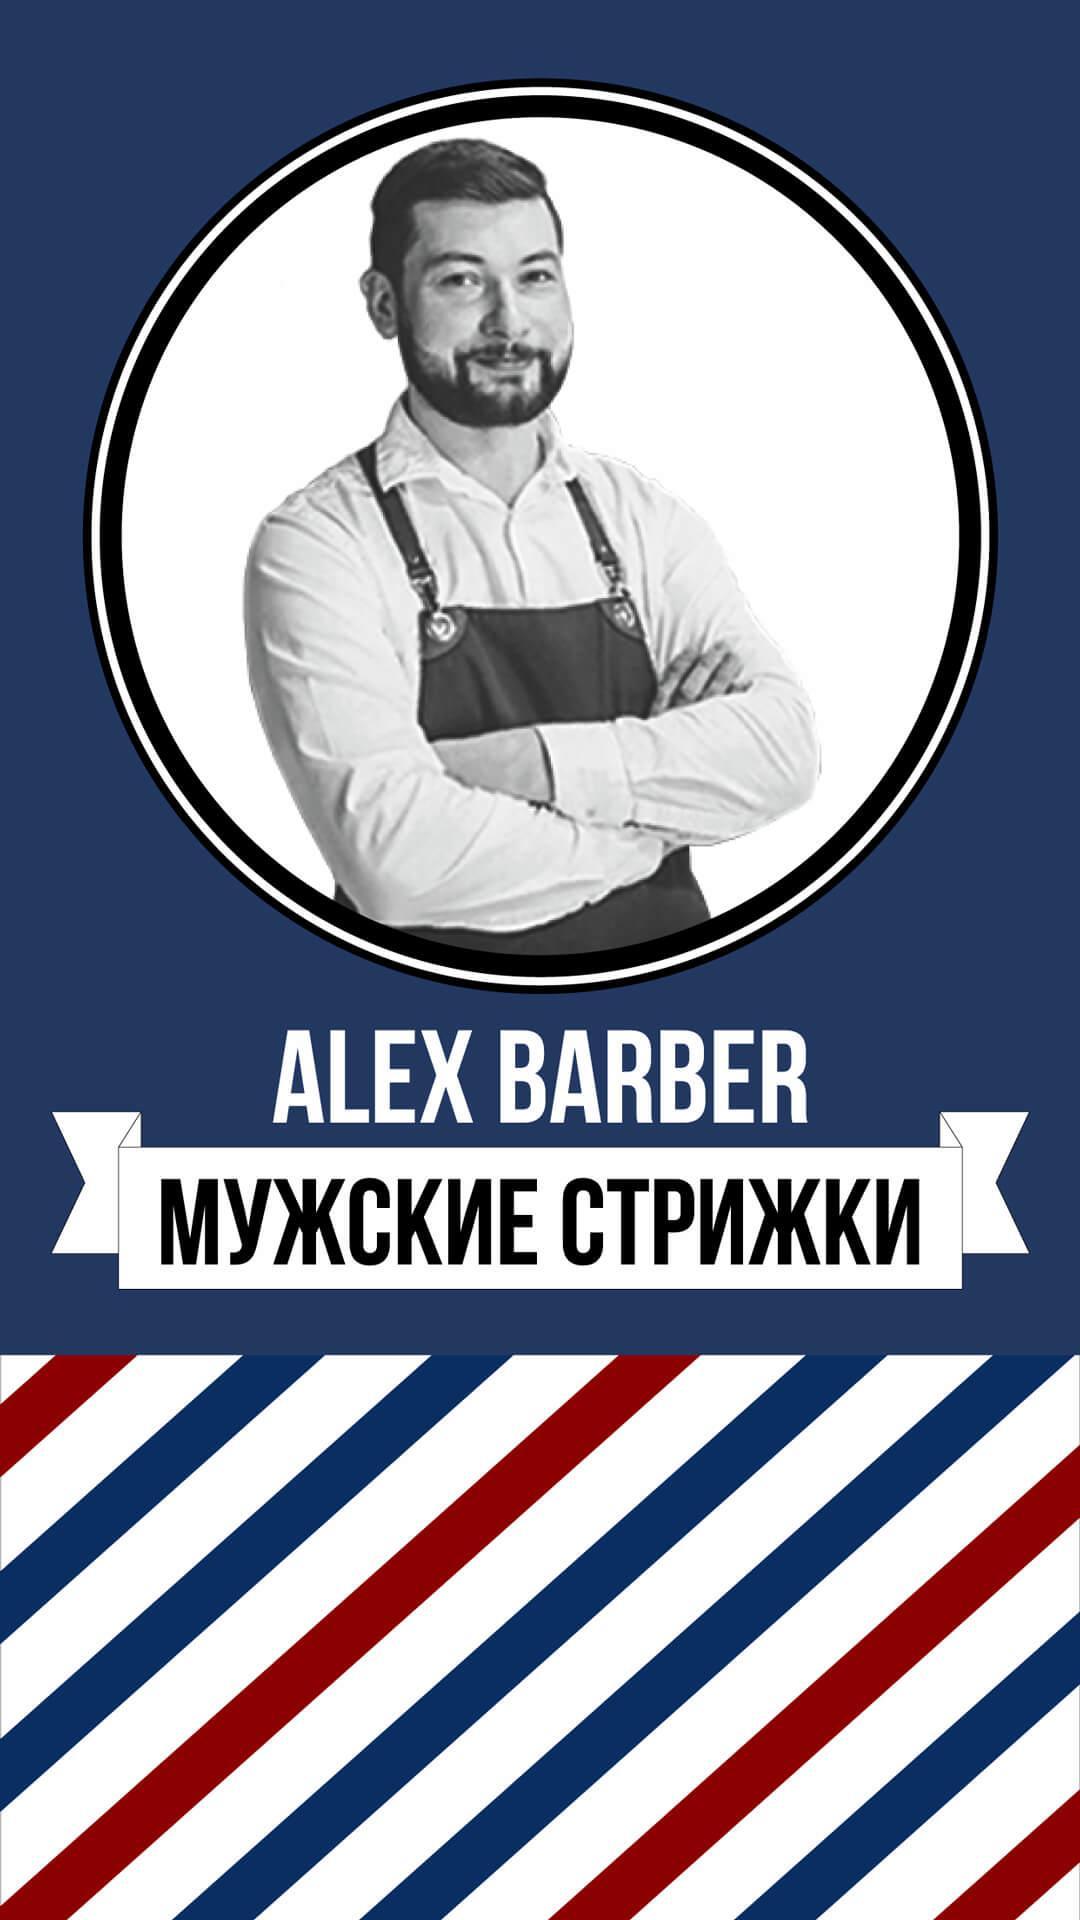 Барбер. Alex Barber. Мужская парикмахерская реклама. Барбер Алекс Краснодар. Barber 3